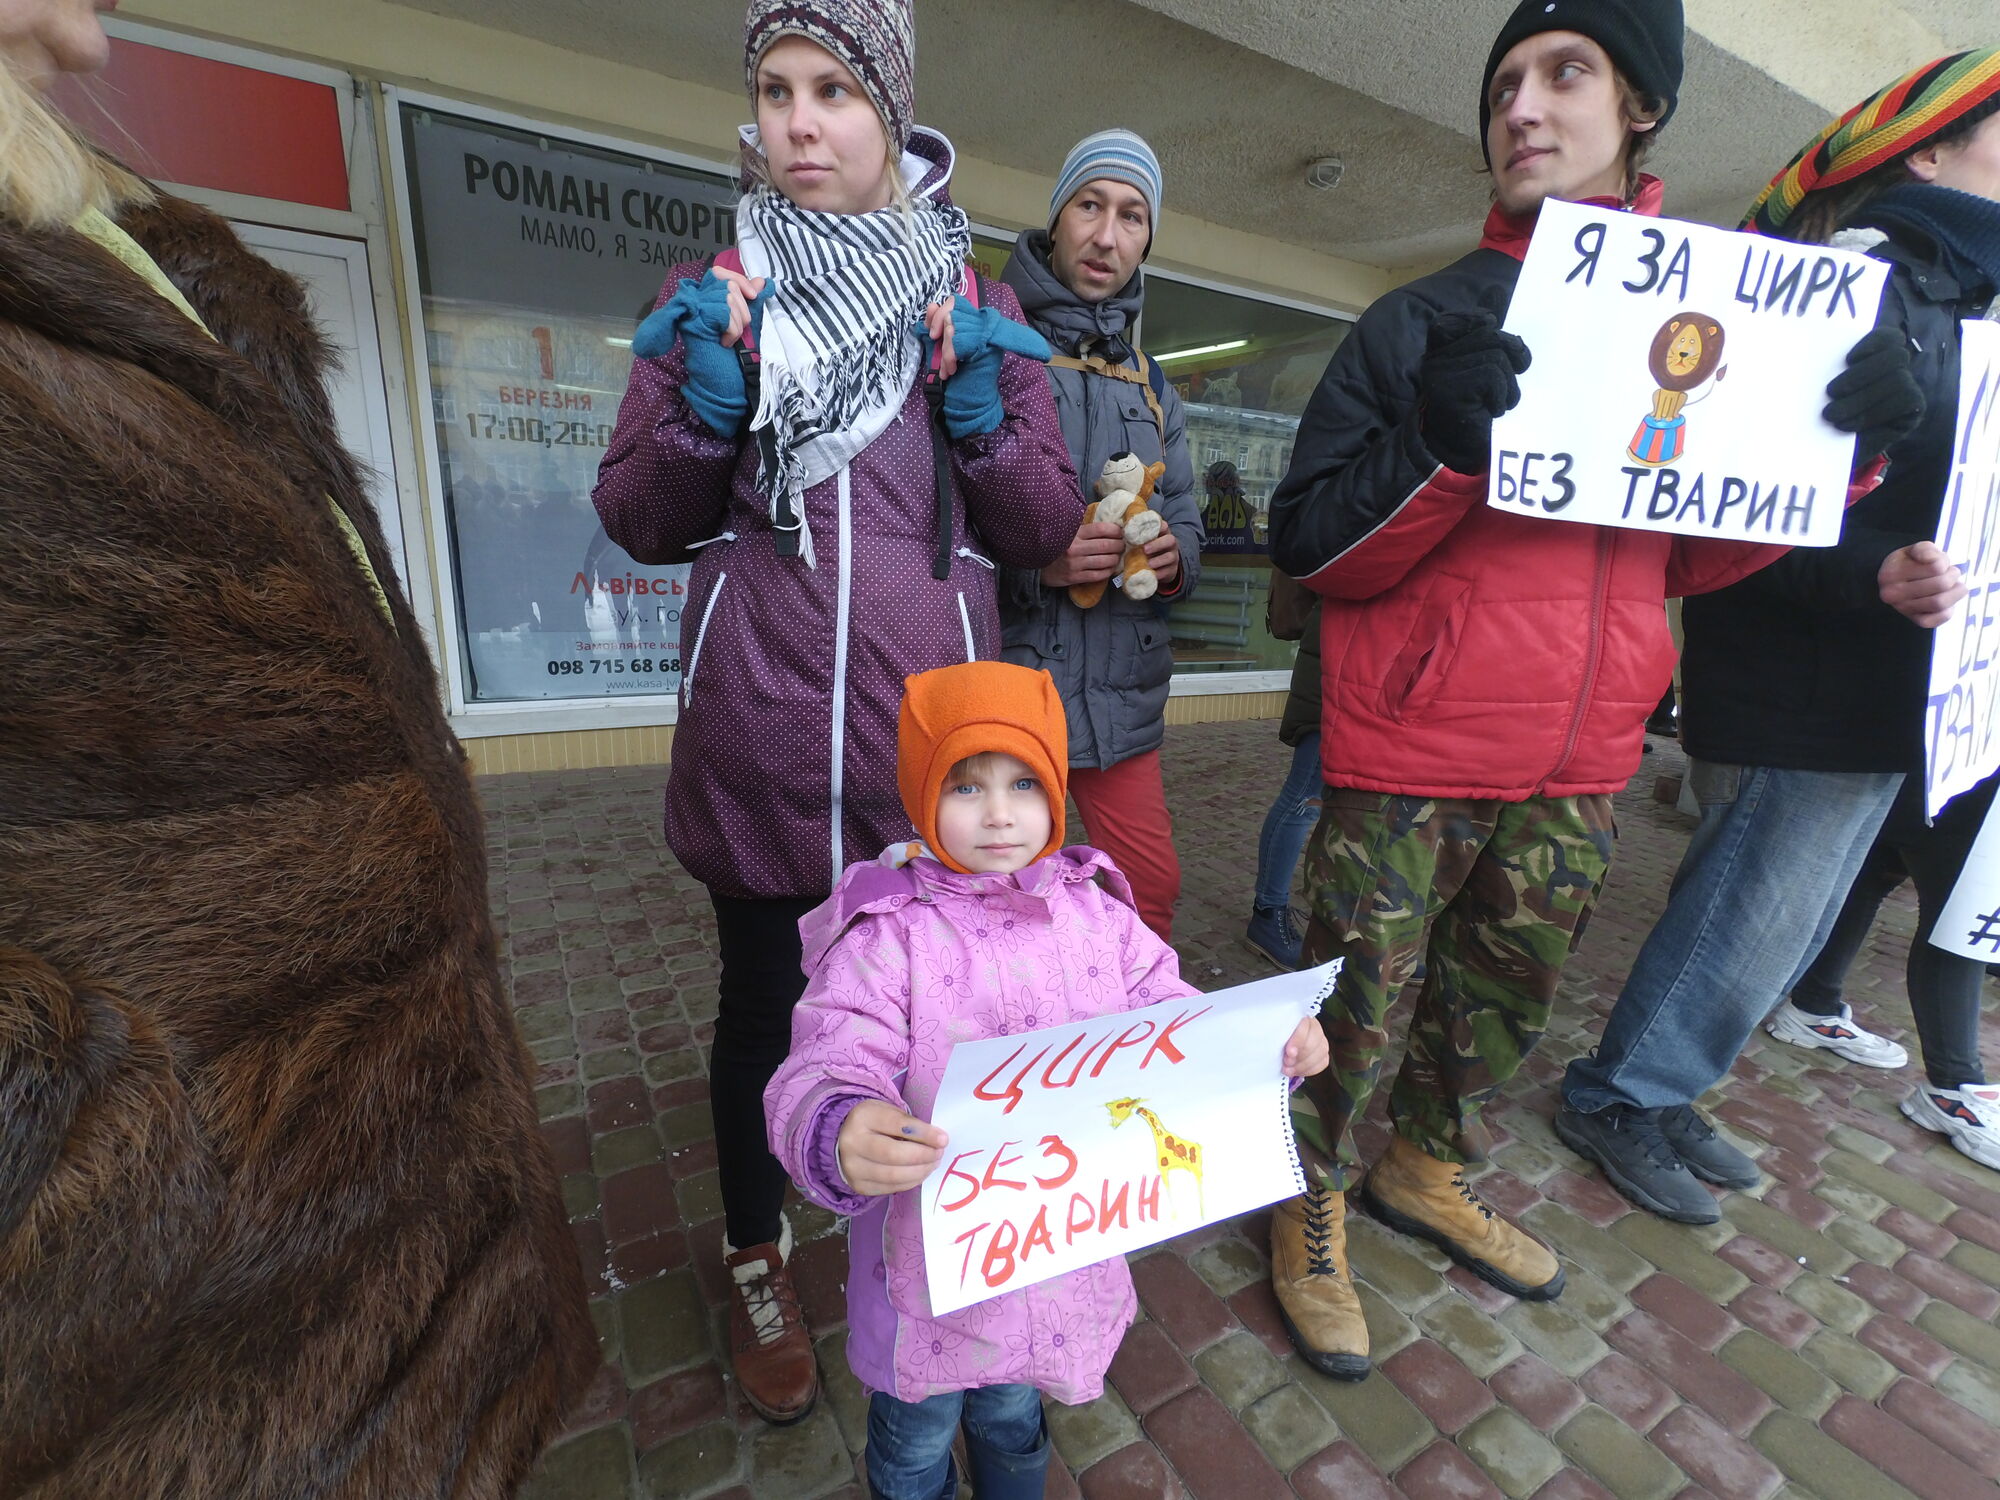 У Львові відбулися жорсткі сутички між активістами та копами: є затримані